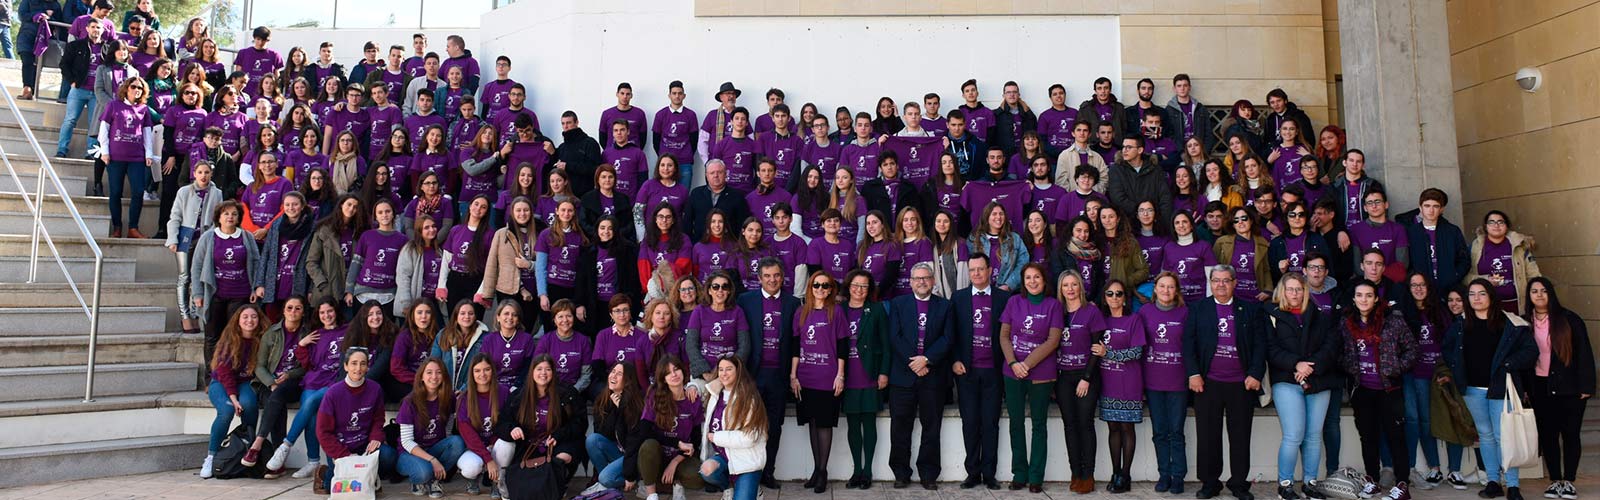 La UMU colabora en la celebración del Día Internacional de la mujer y la niña en la ciencia